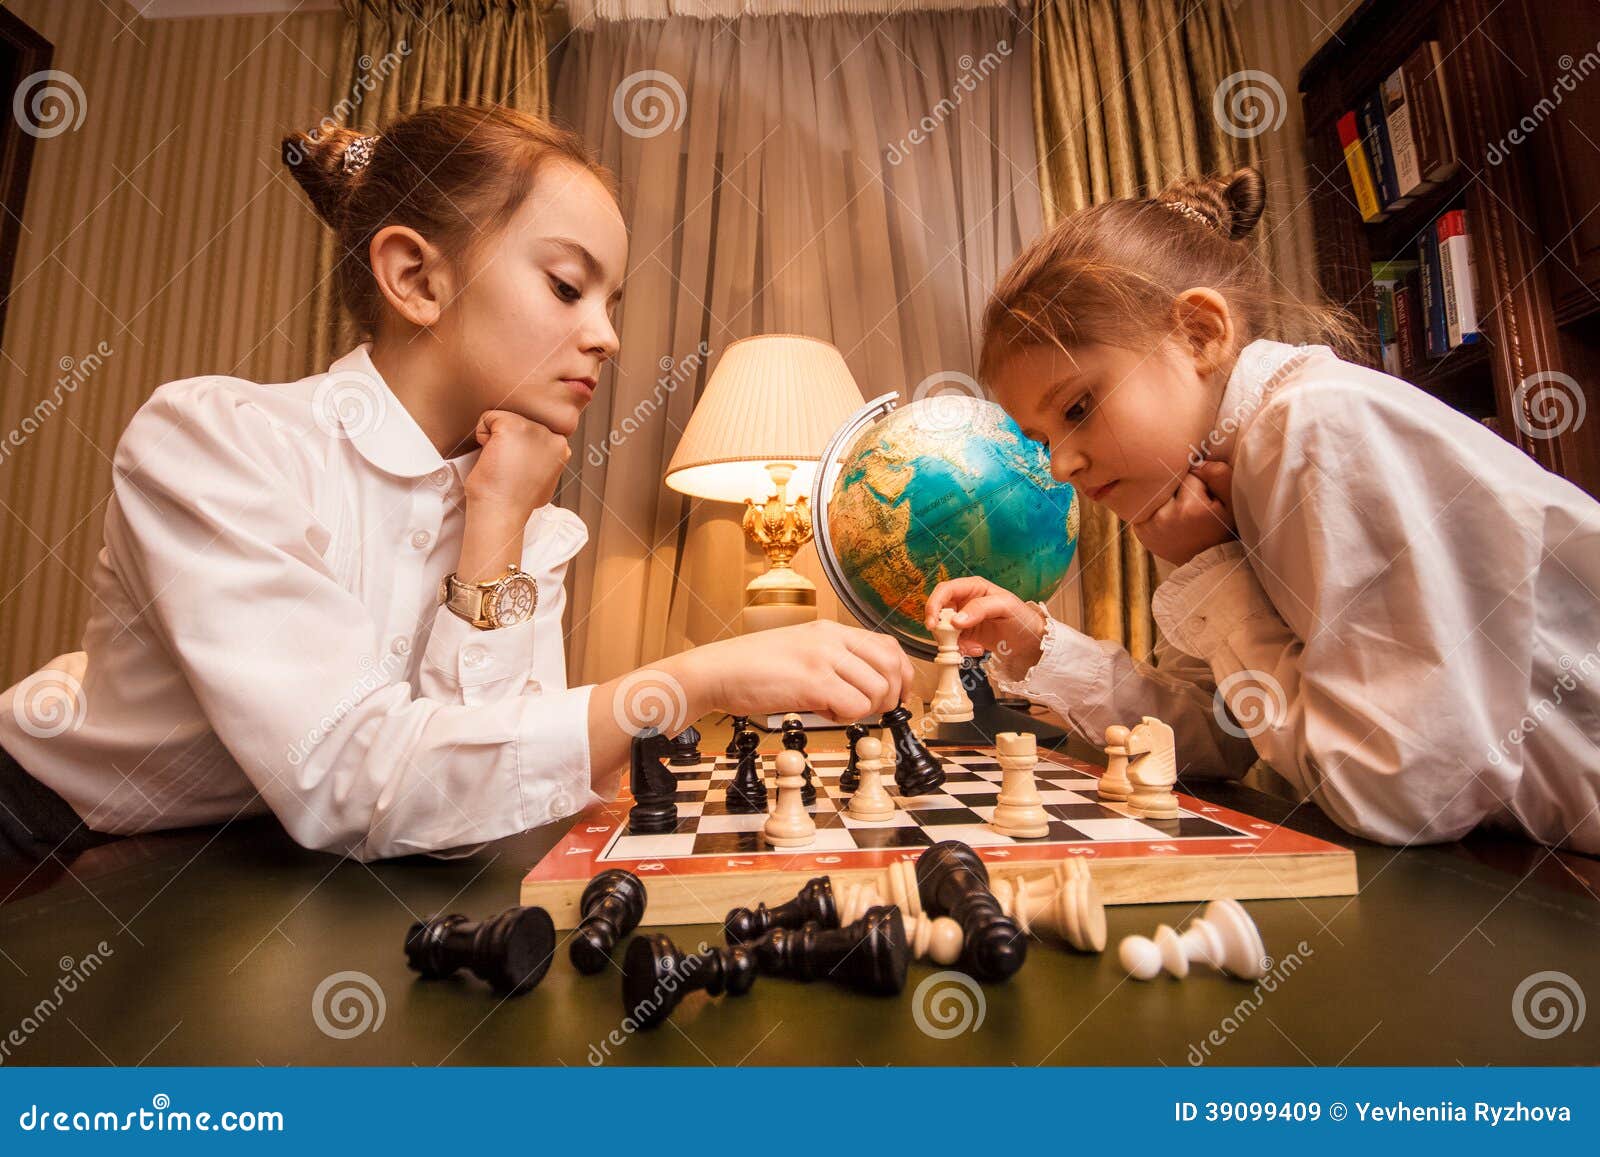 Porträt Von Zwei Kleinen Schwestern, Die Schach Spielen Stockbild